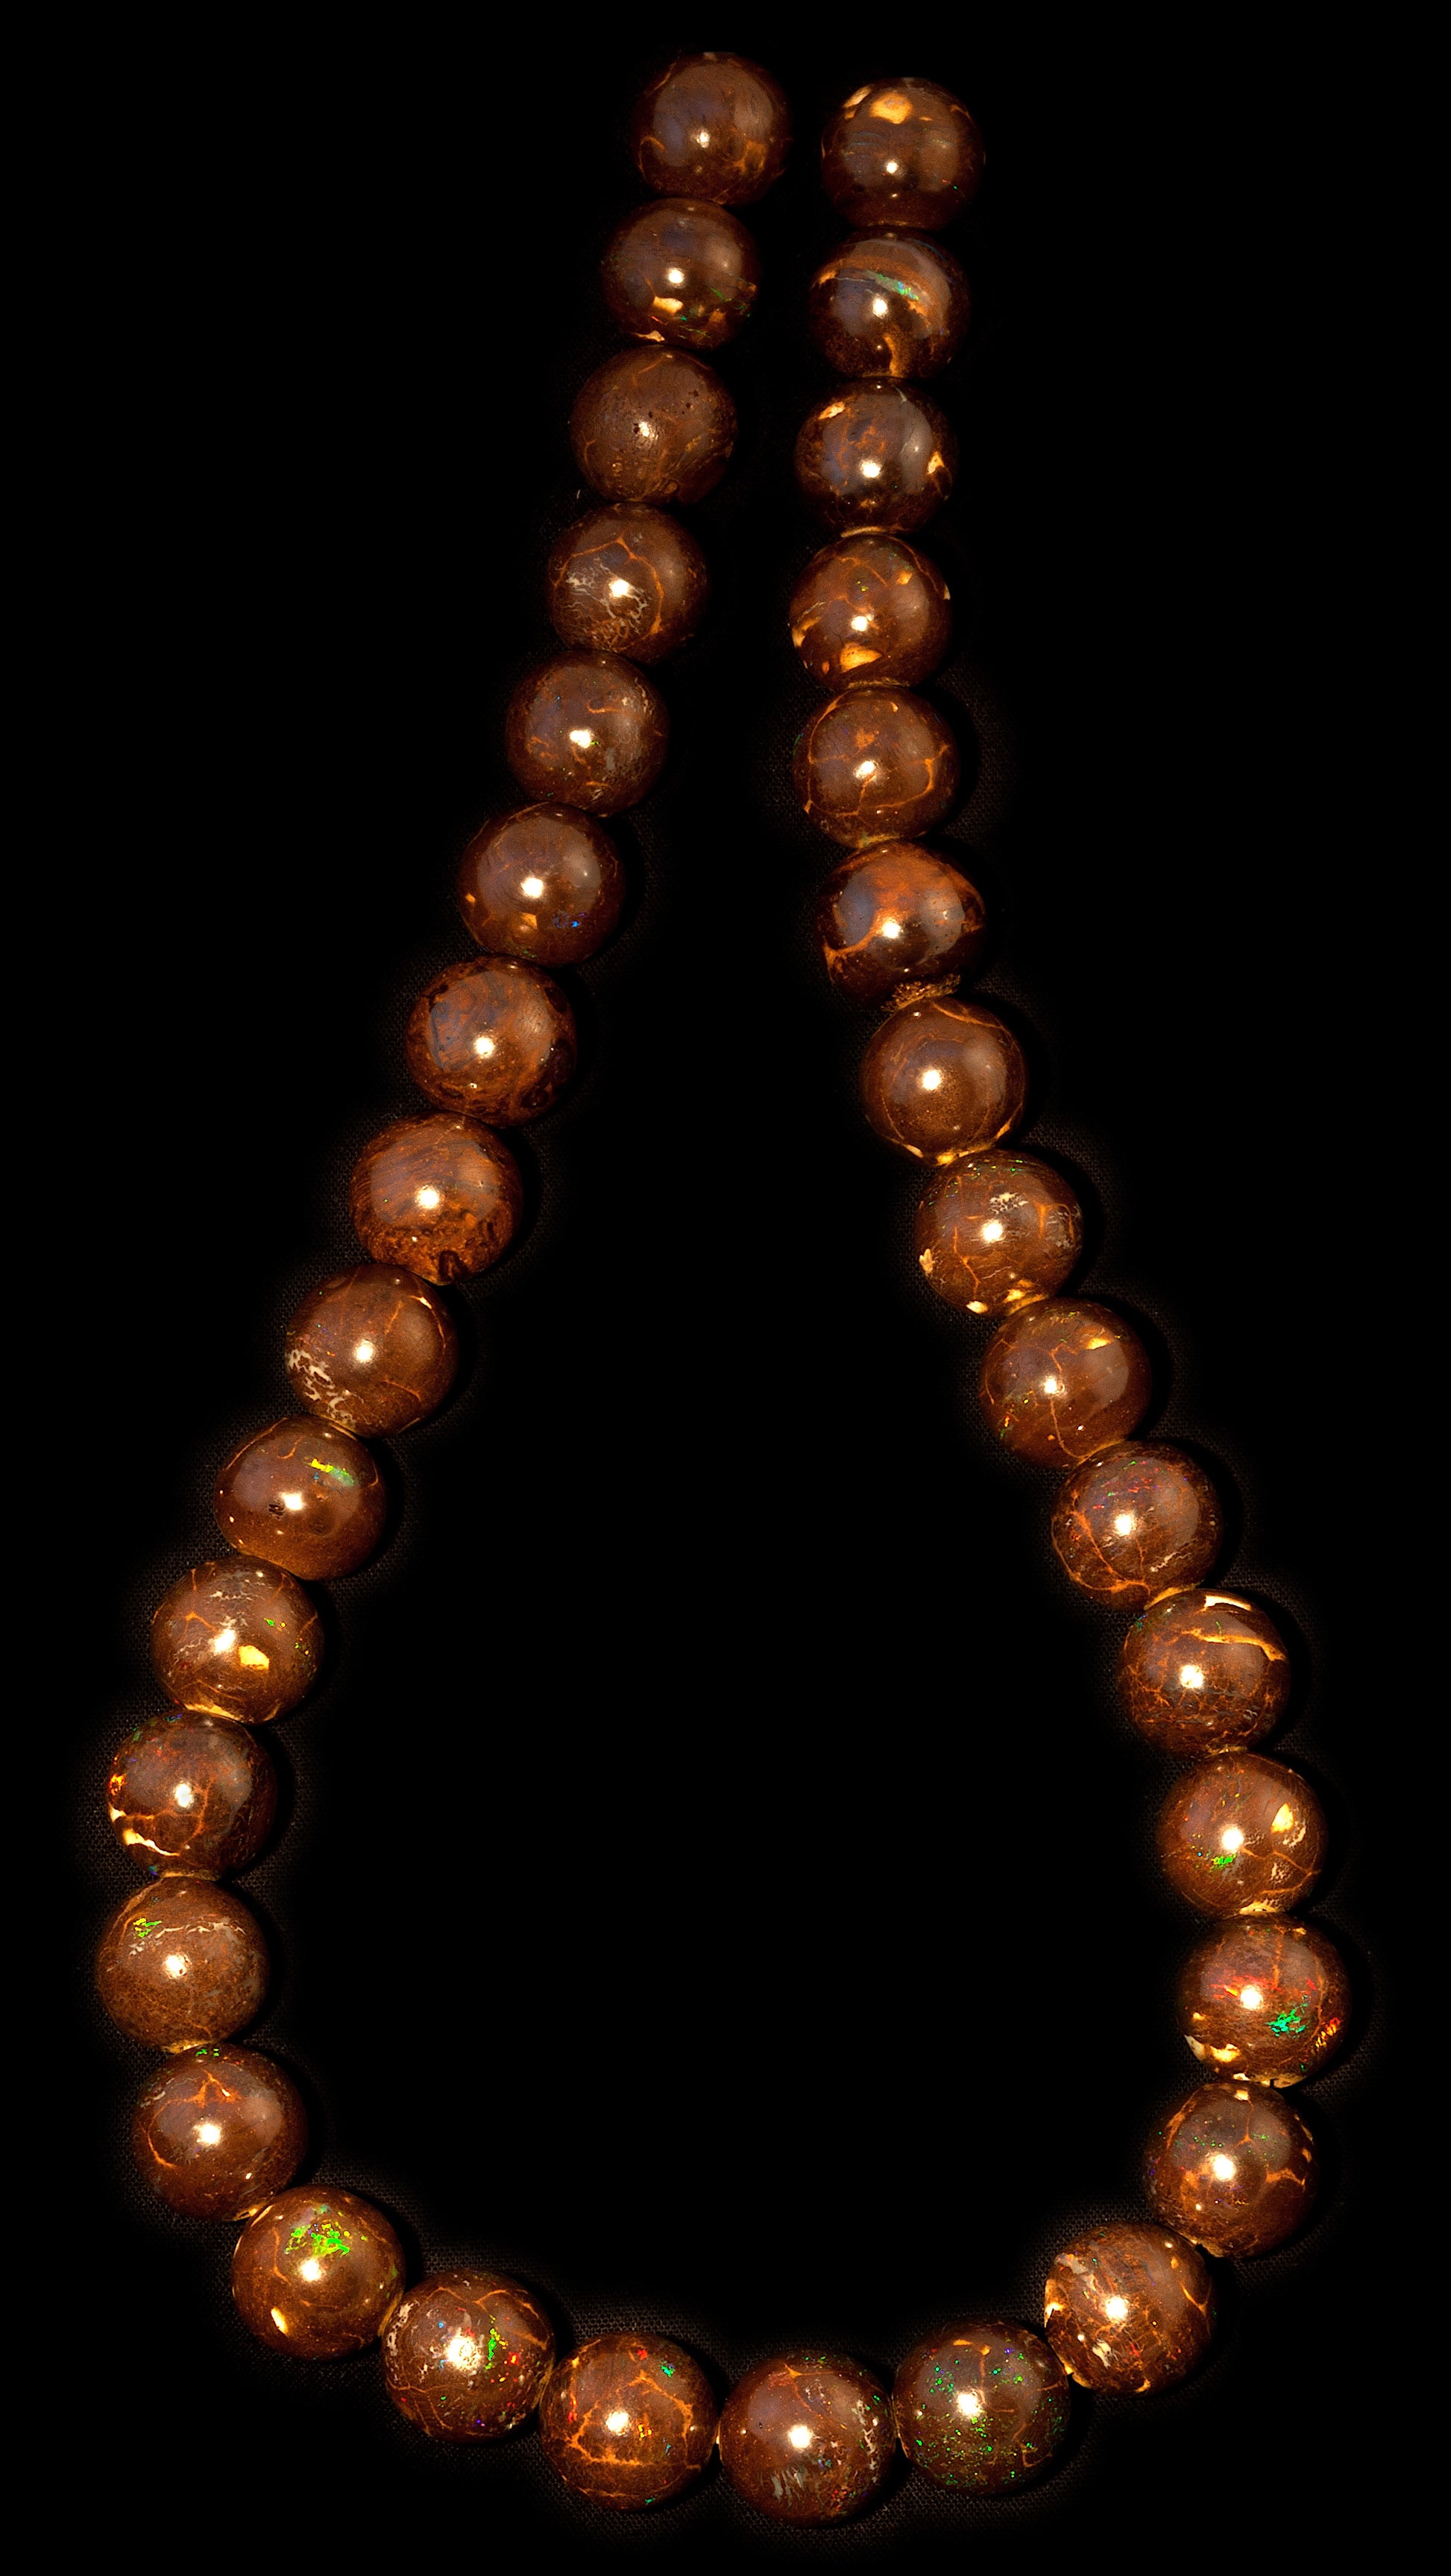  Queensland Boulder Opal Matrix Beads 12mm